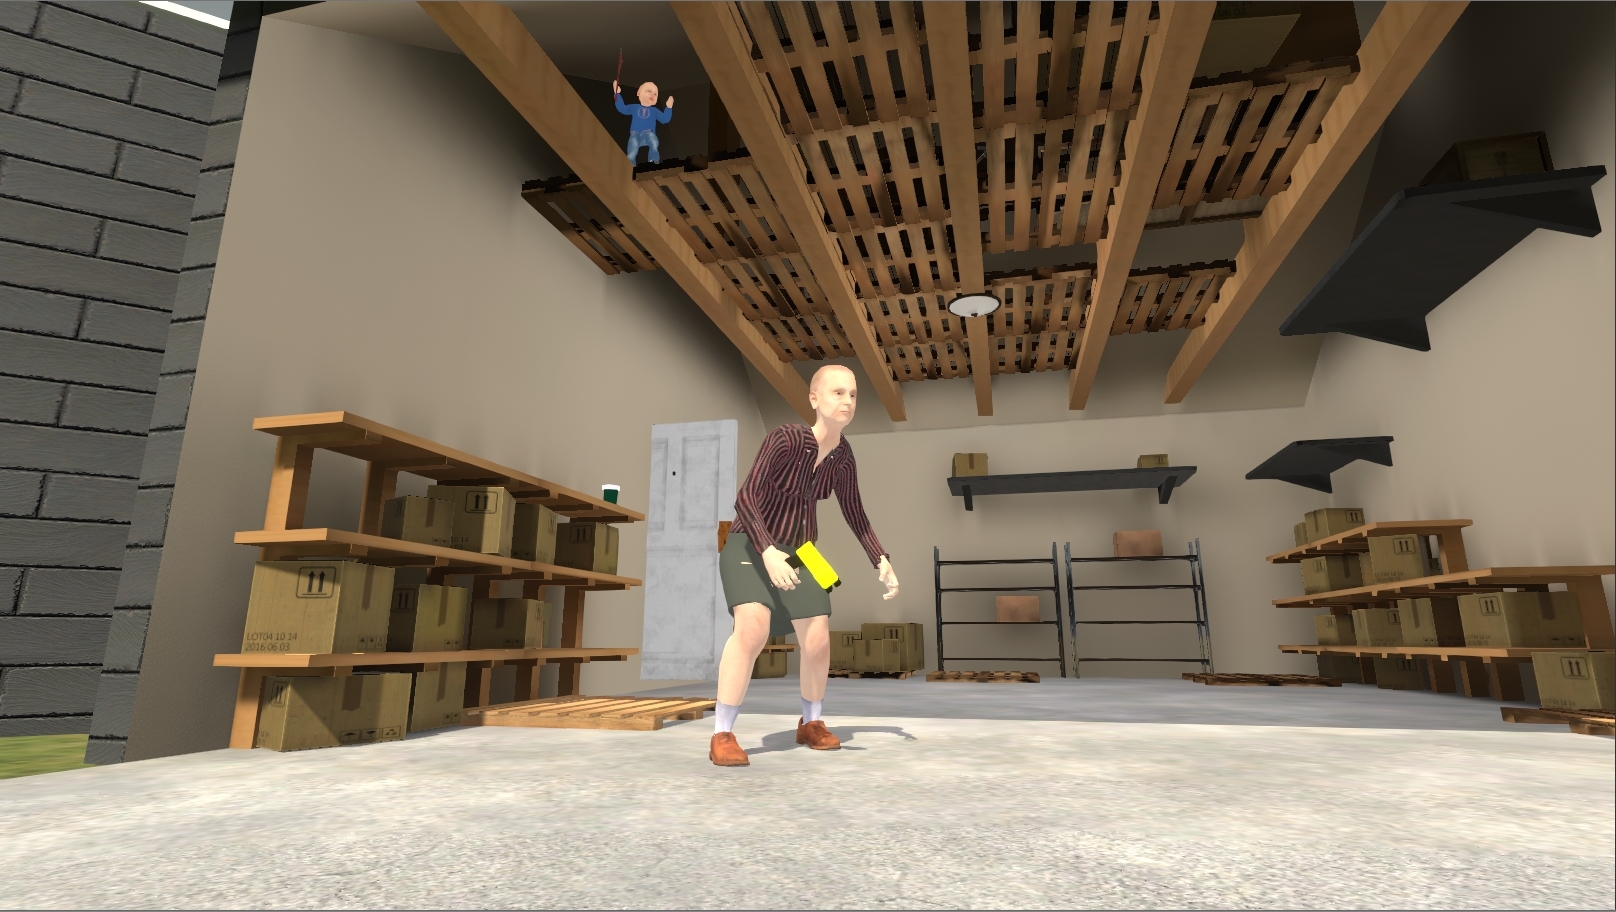 Granny Simulator screenshot